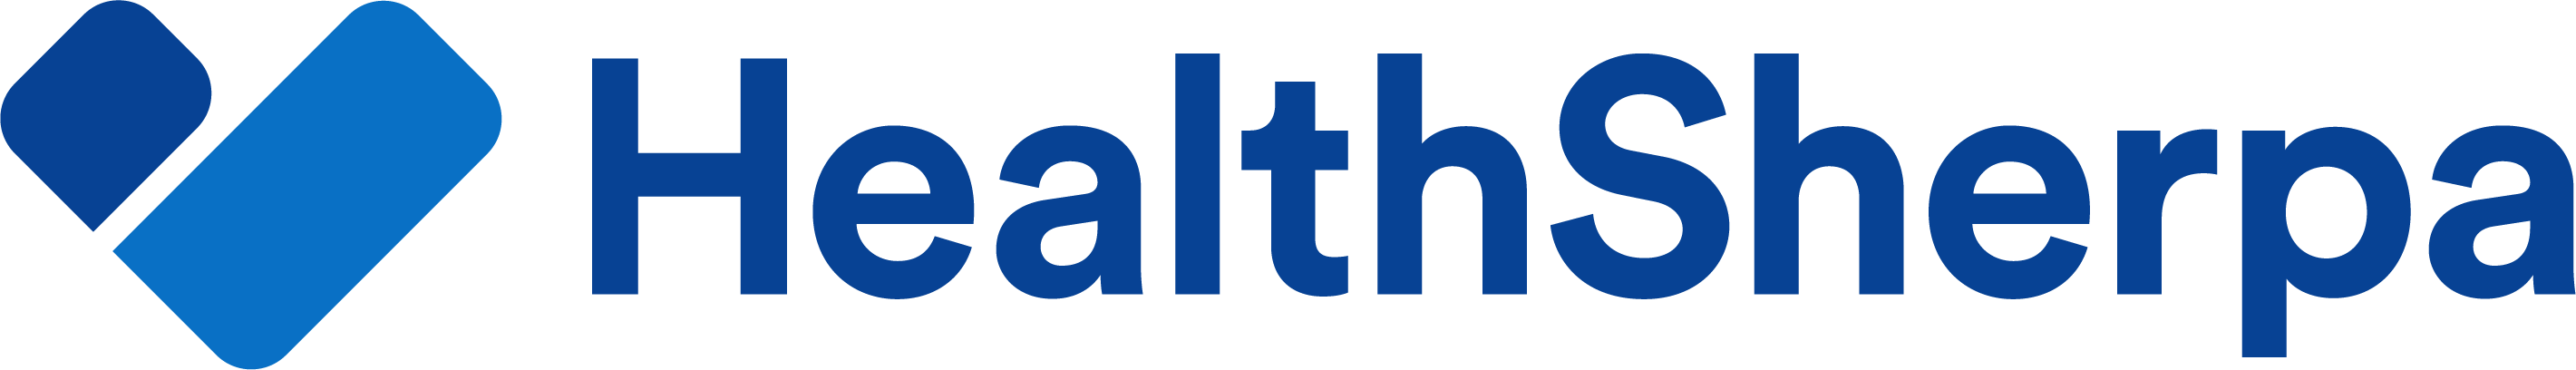 Healthsherpa_RGB_logo_XL